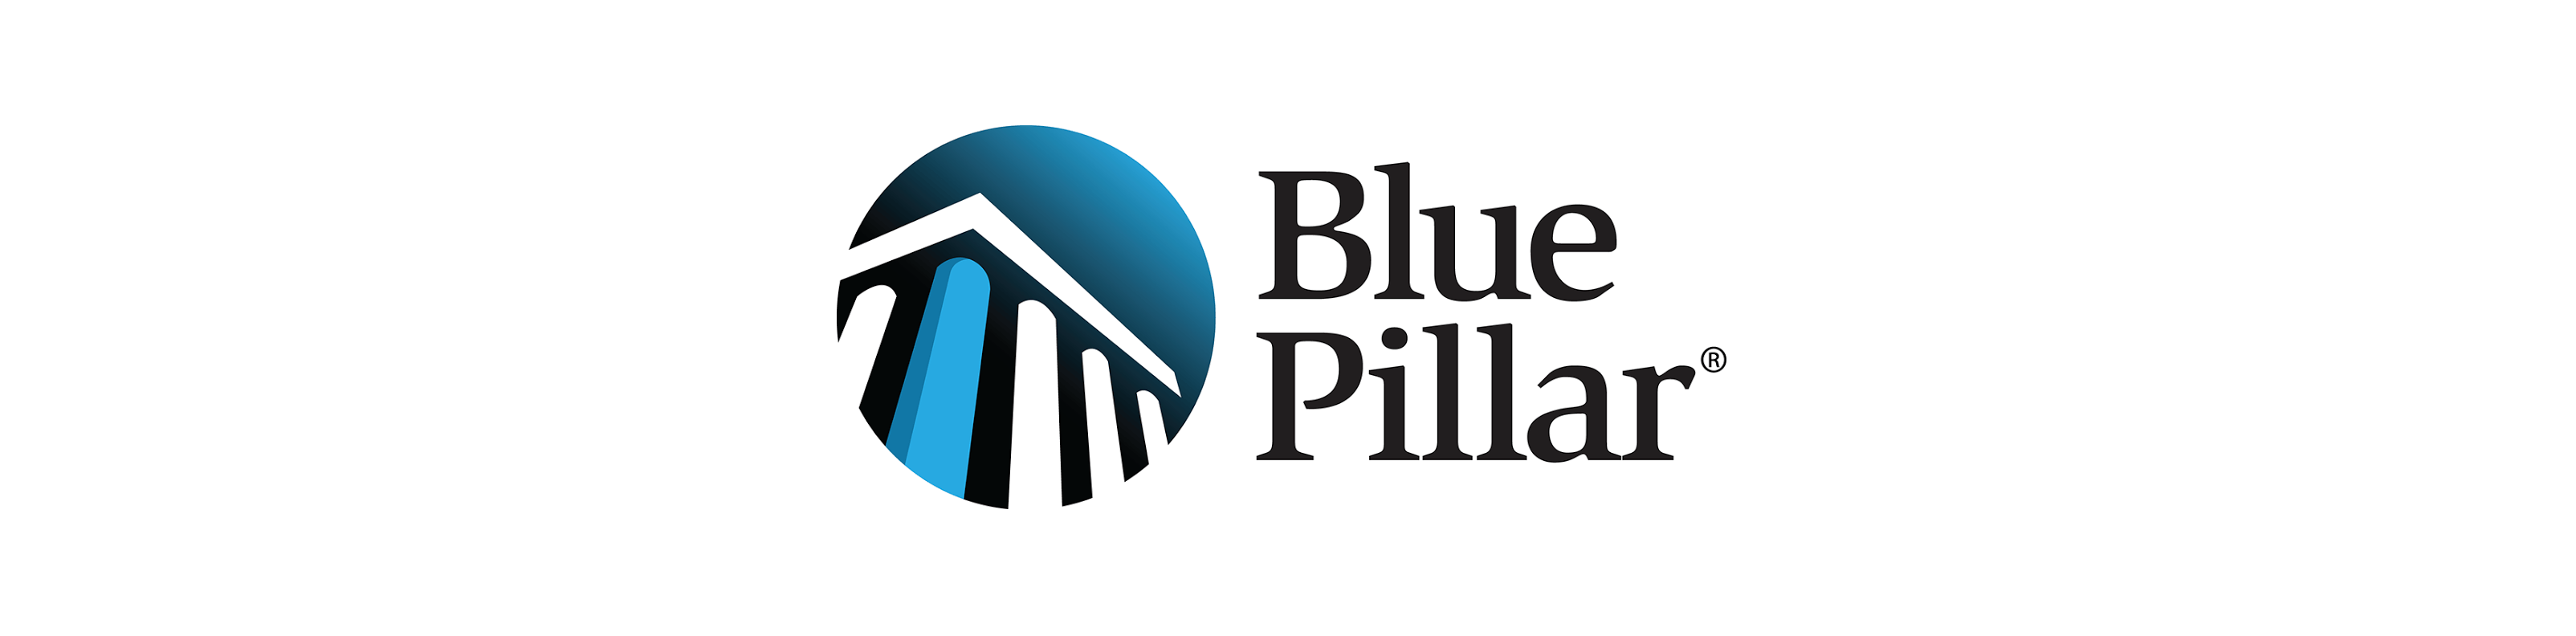 Blue Pillar Logo - Blue Pillar